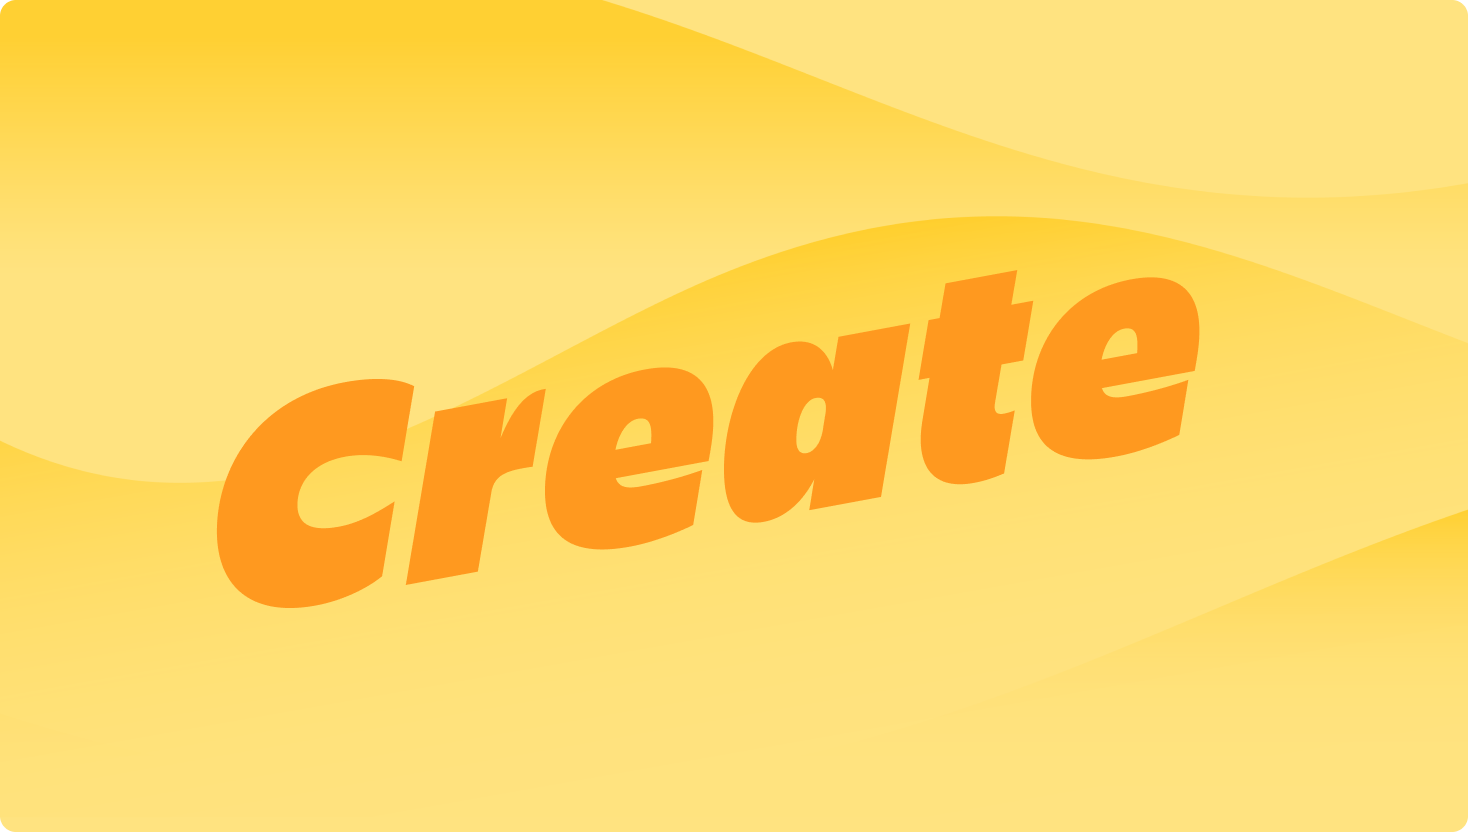 Un'immagine a forma di onda gialla con la parola creare in primo piano